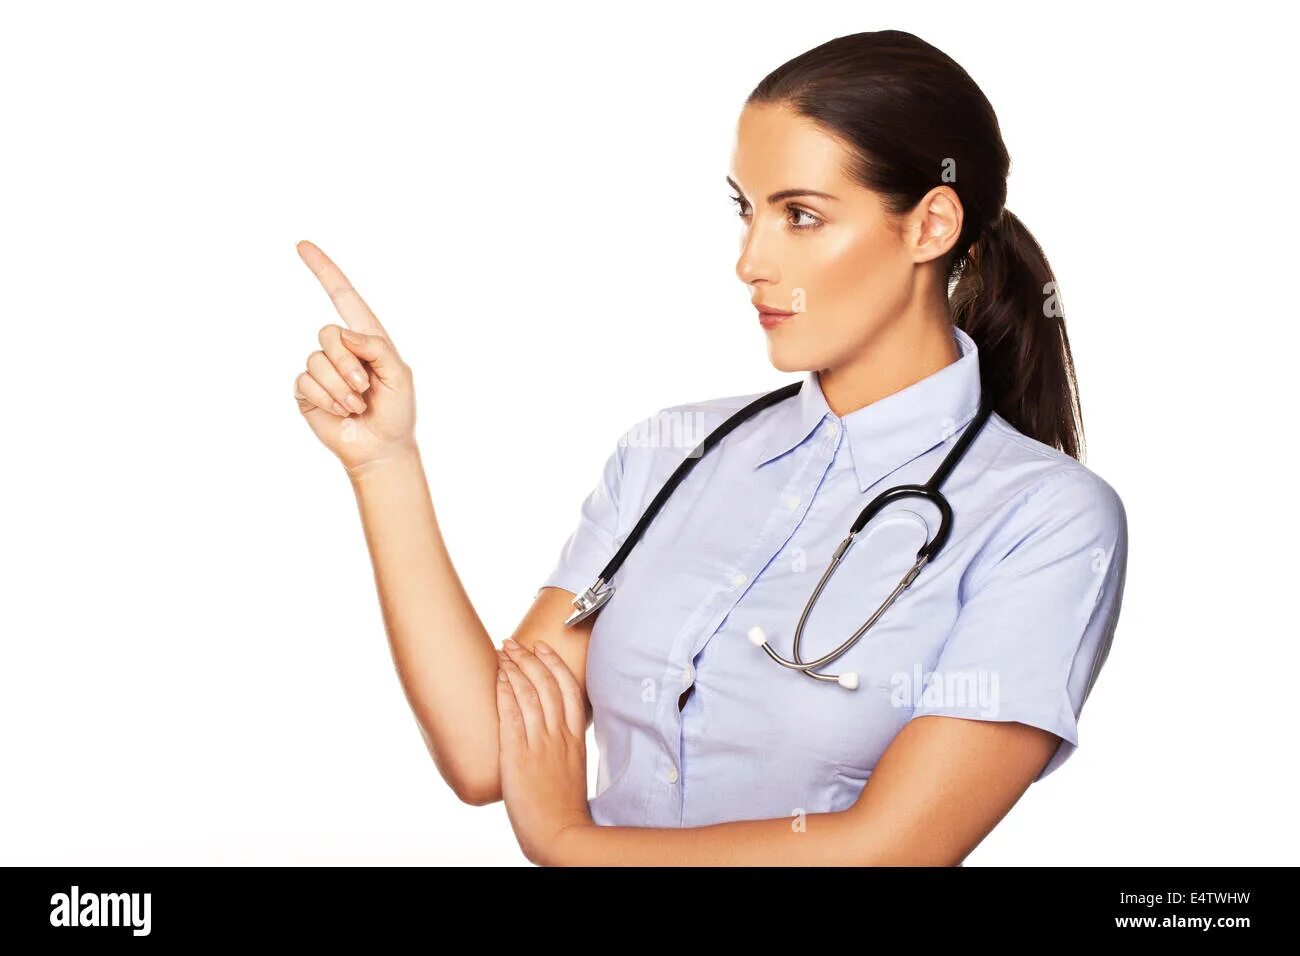 Доктор указывает. Врач палец вверх. Медицинская сестра указывает. Врач обращает внимание.